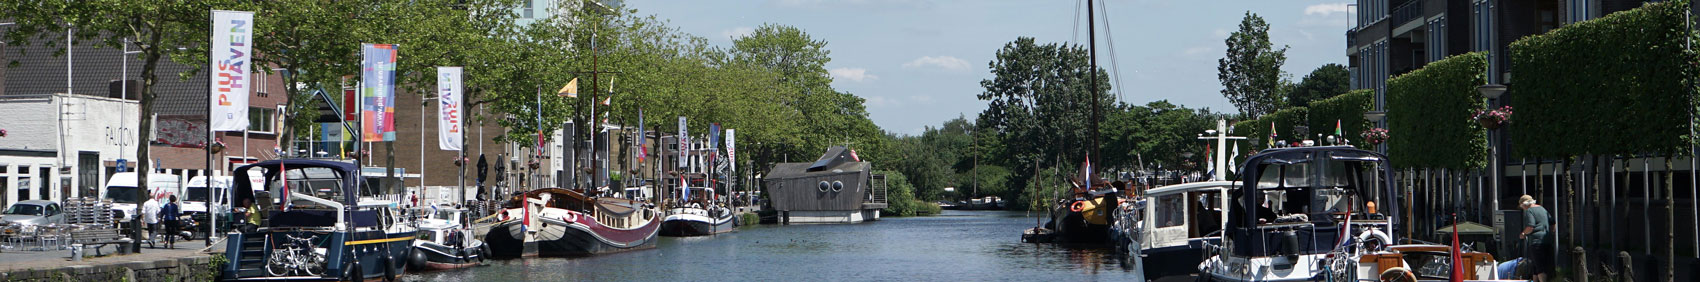 Tilburg Piushaven